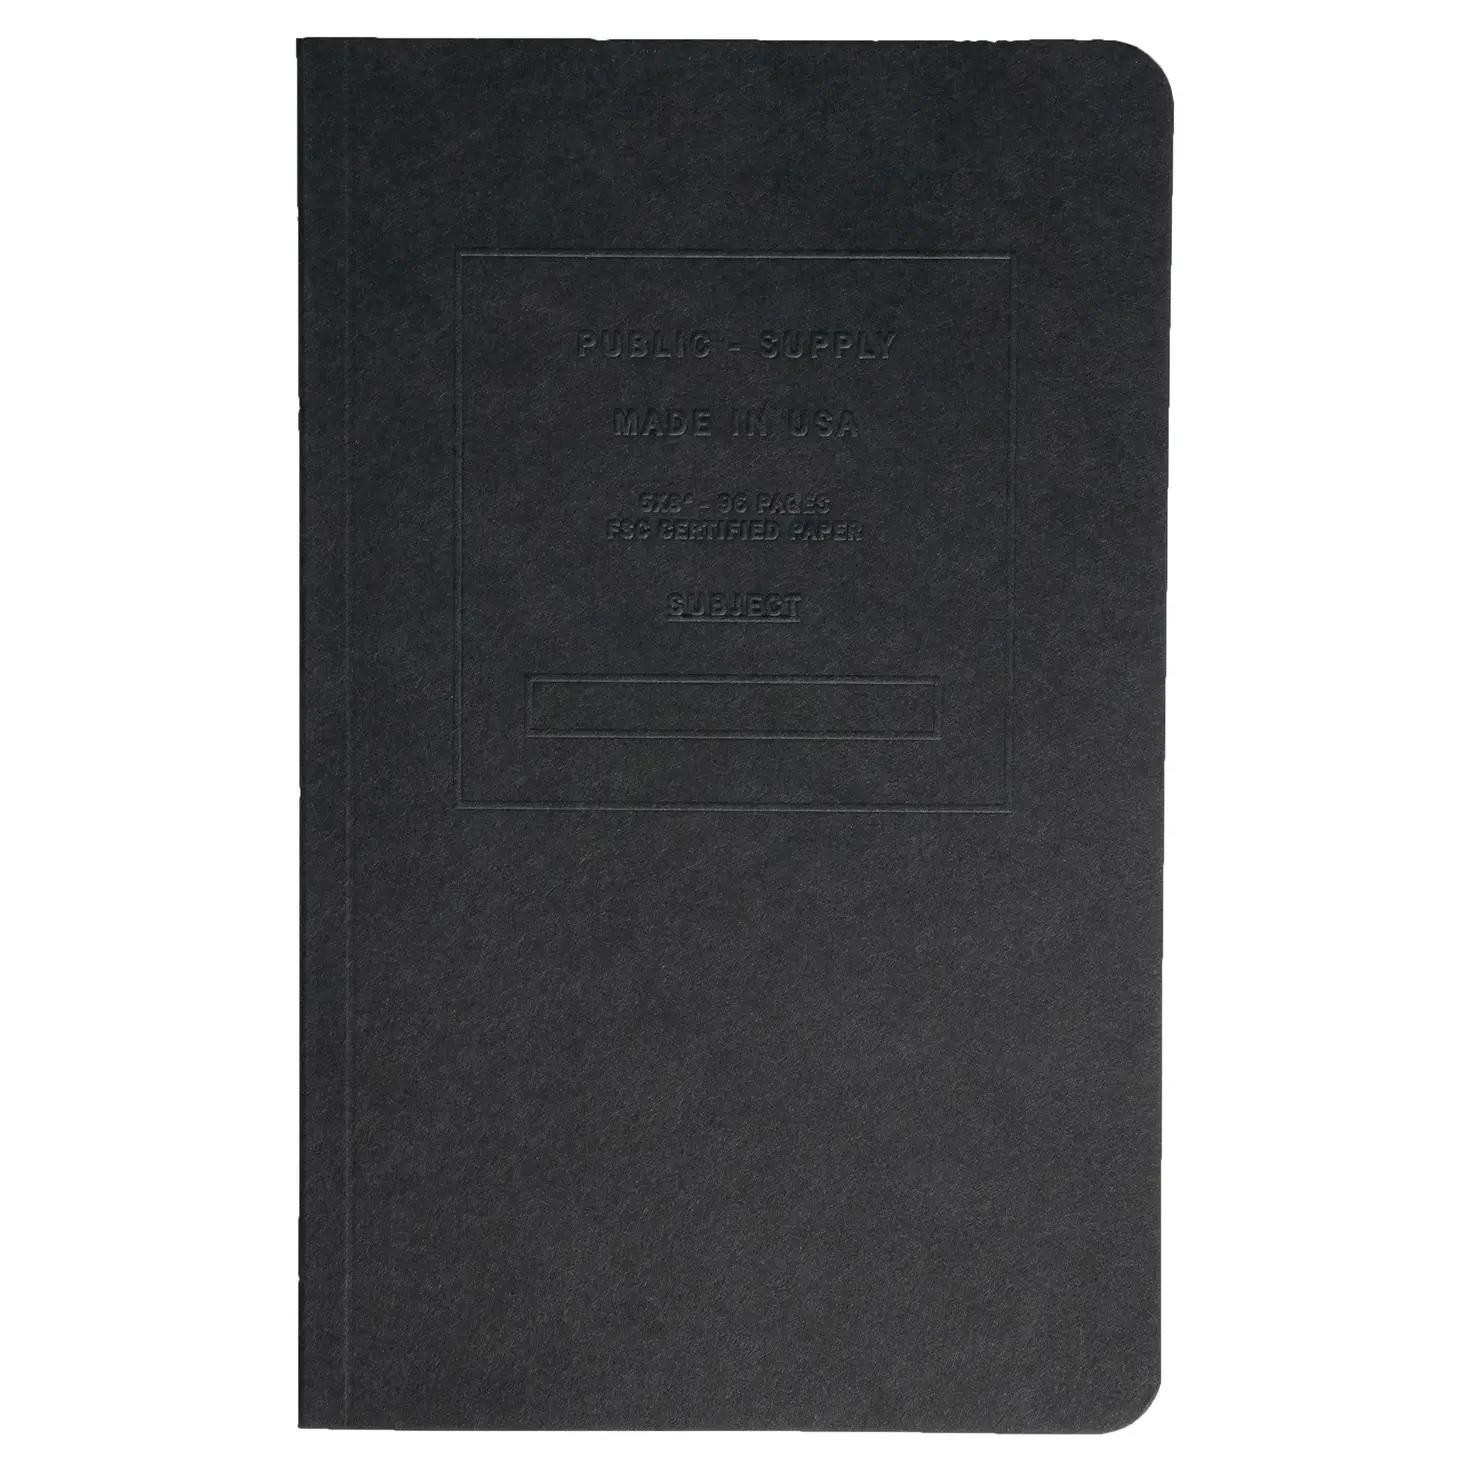 PUB Embossed notebook- black ruled